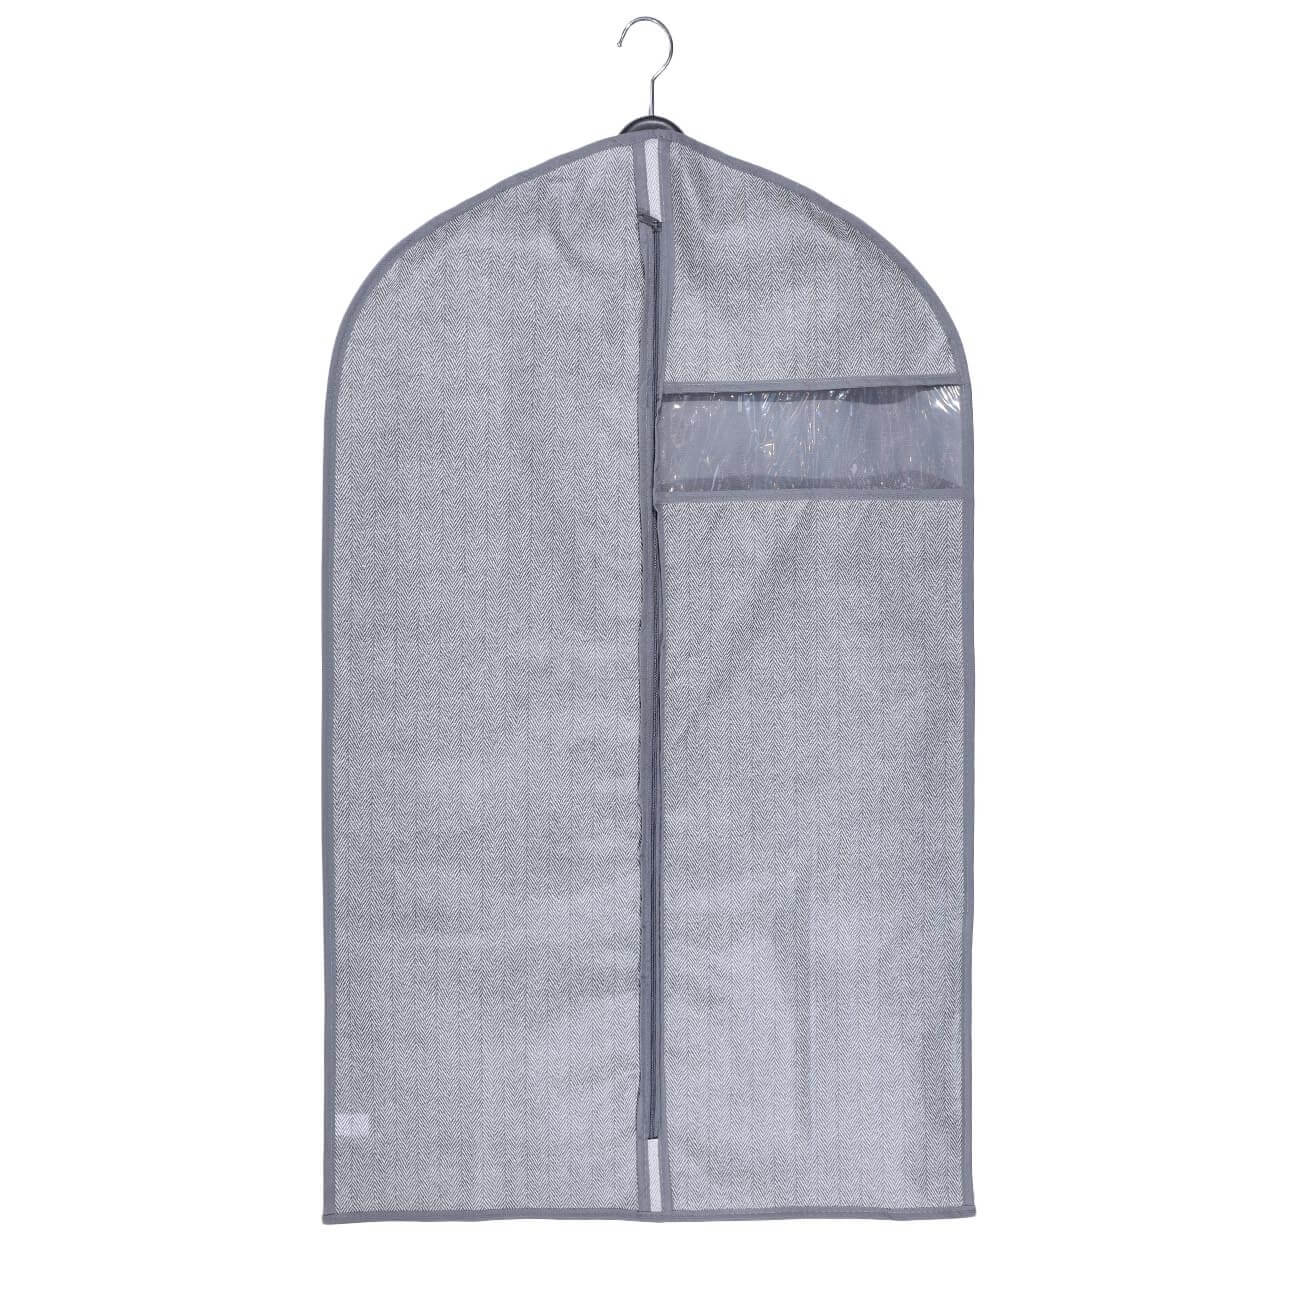 Чехол для одежды, 60х100 см, текстиль/ПВХ, серый, Pedant new чехол для одежды hausmann объемный 60x100x10см